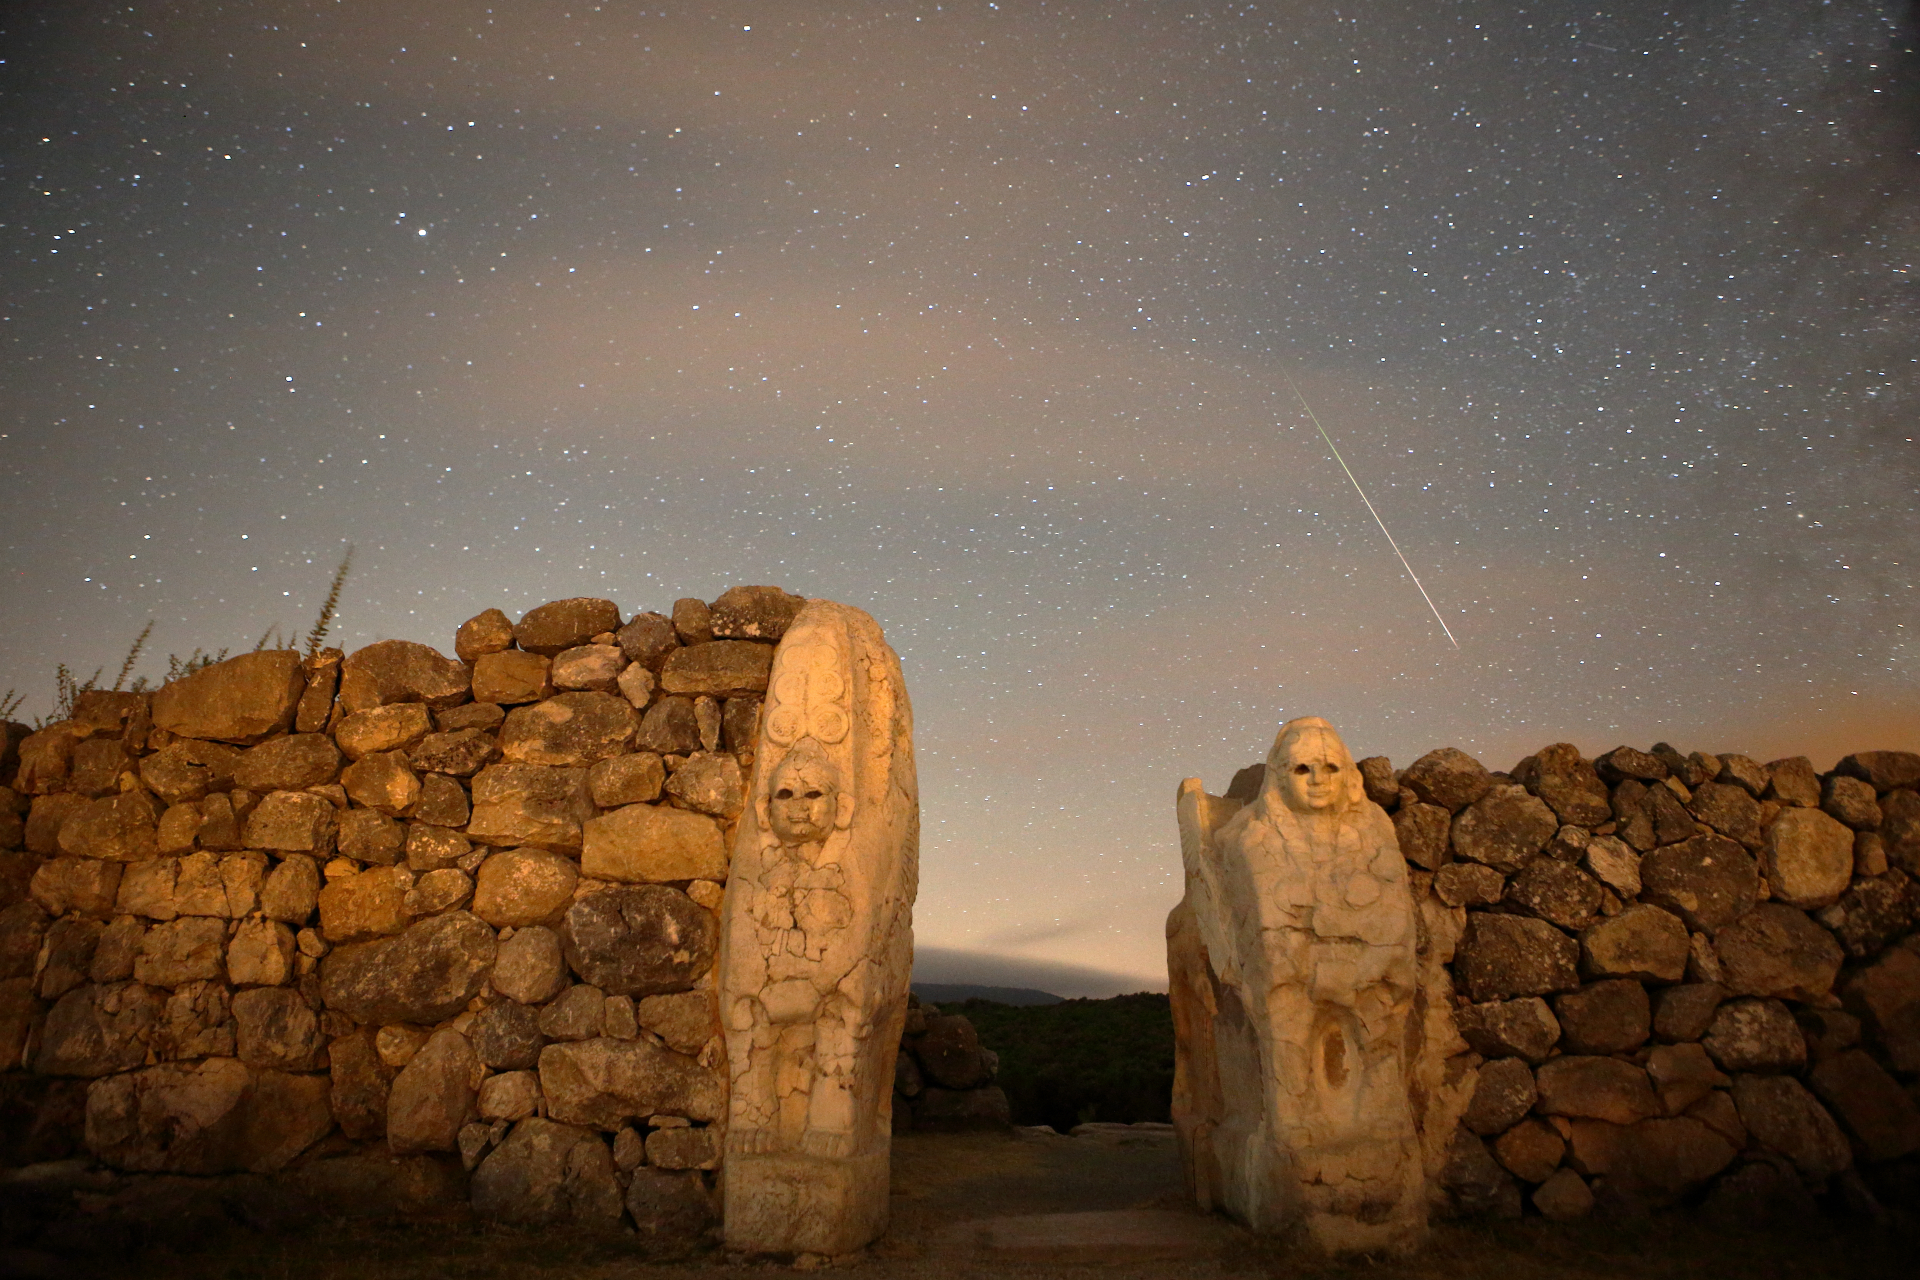 Une traînée de météores proéminente dans le ciel au-dessus d'un mur de pierre avec deux personnages sculptés dans la roche.